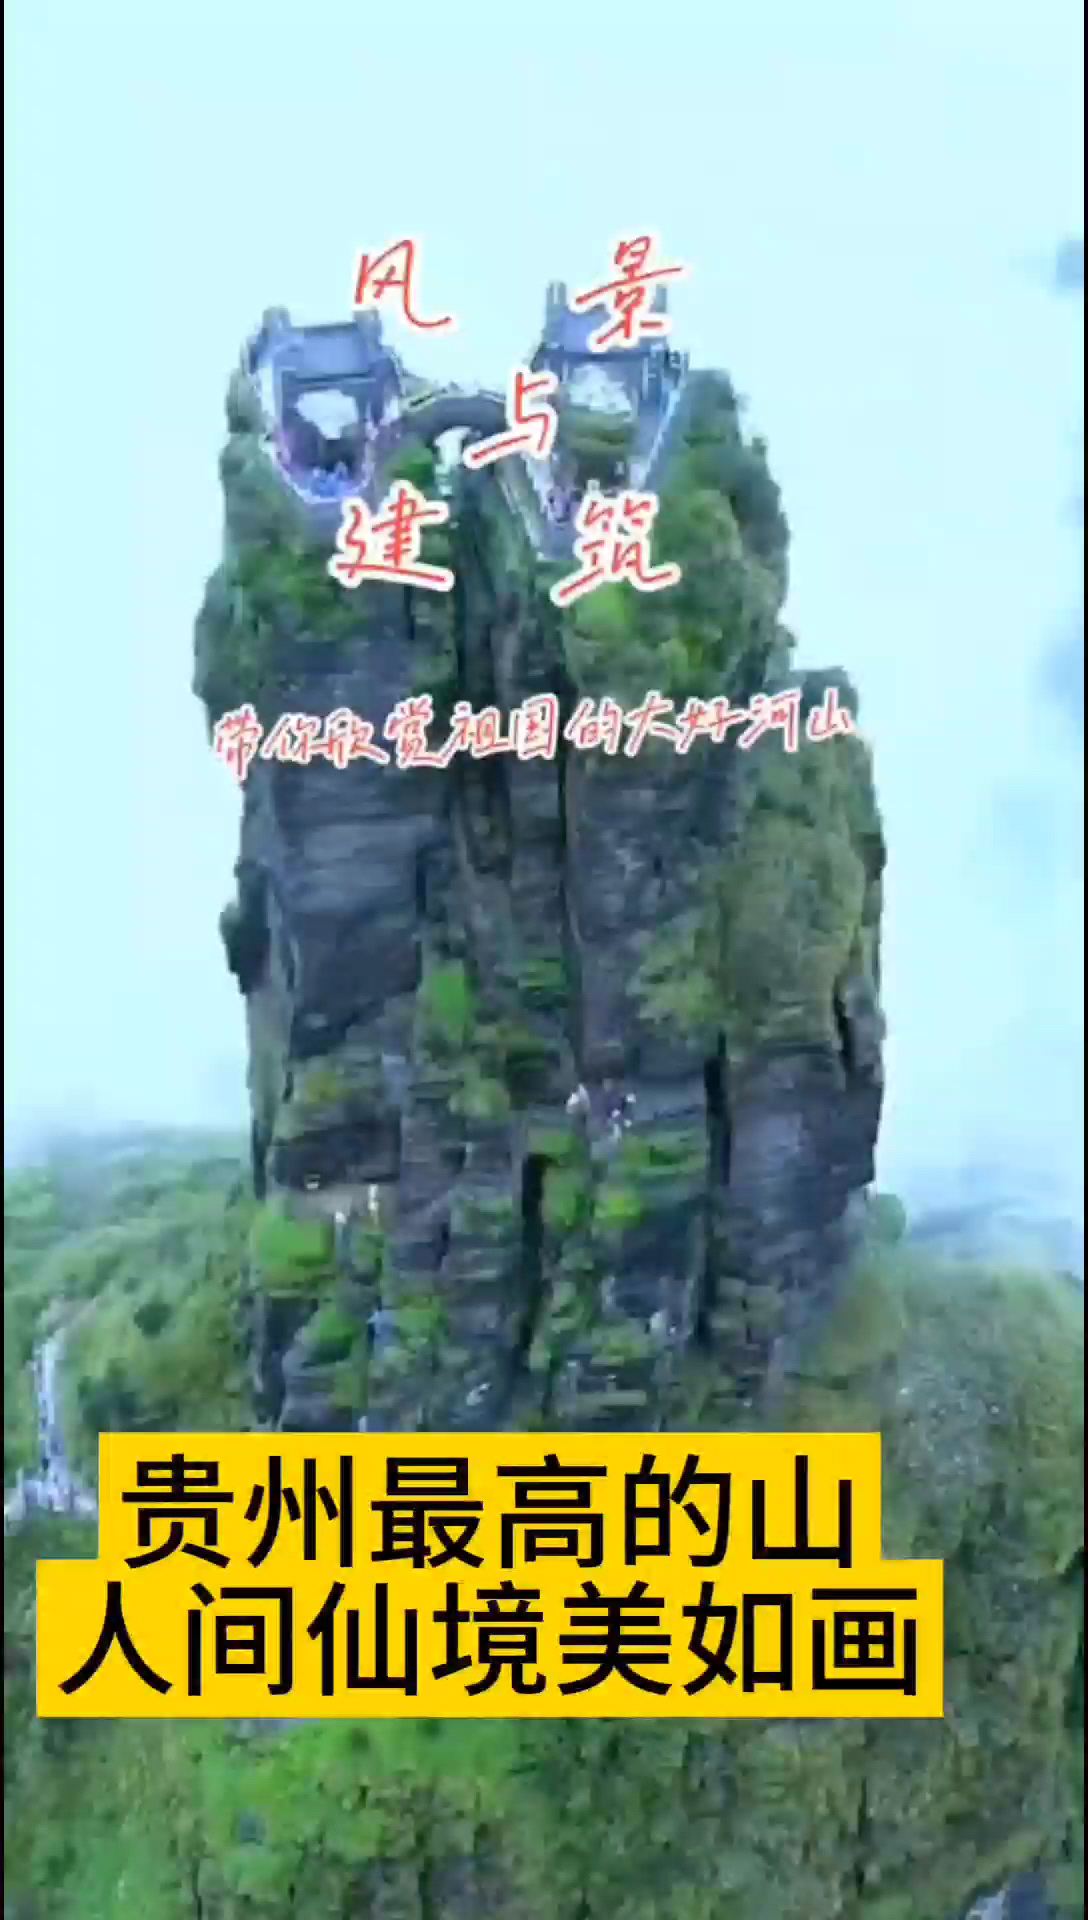 贵州最高的两座山仙境美如画